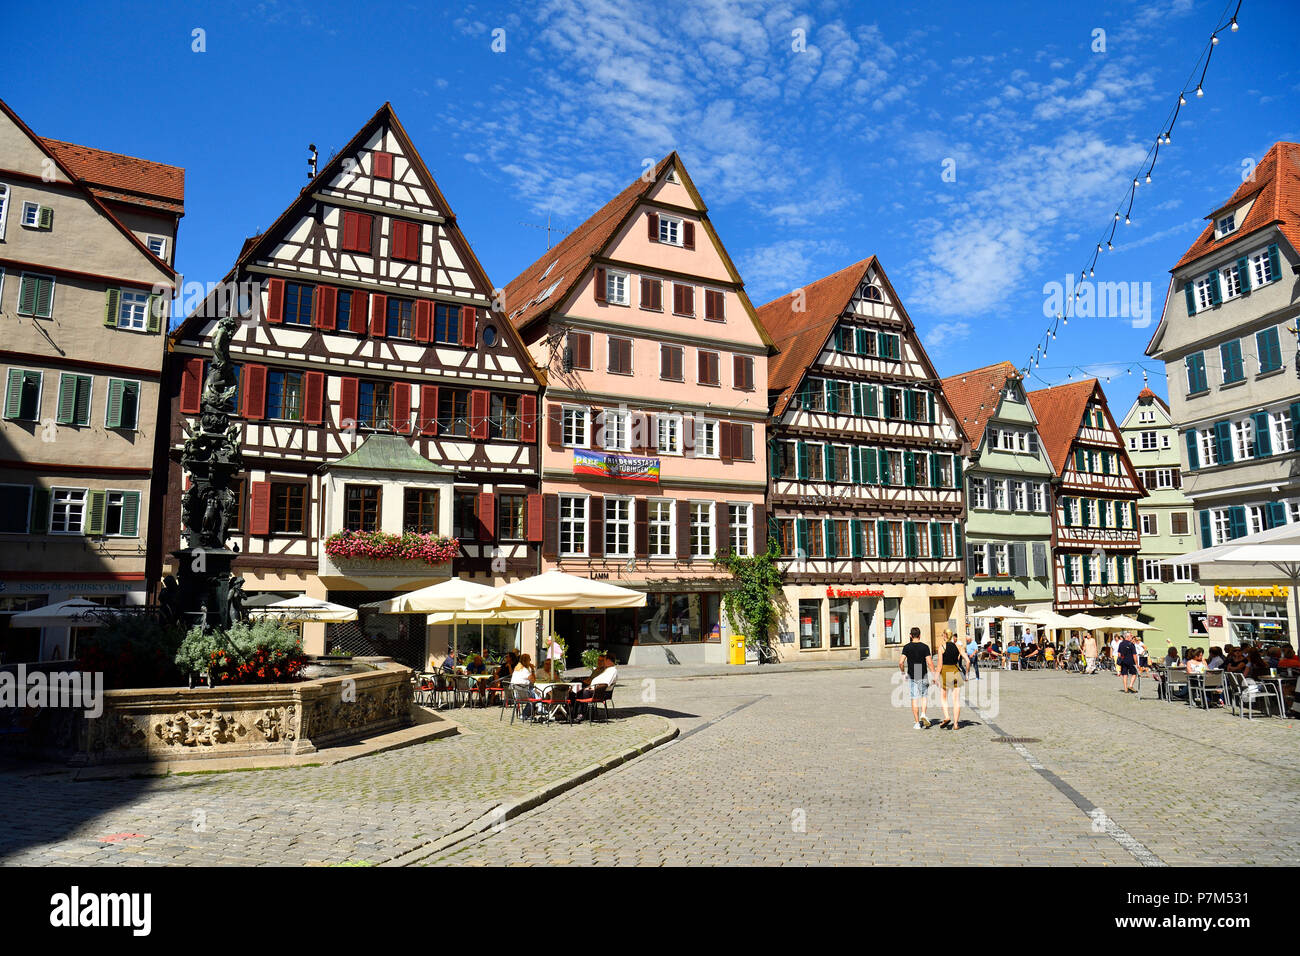 Germany, Baden-Wurttemberg, Neckartal (Neckar valley), Tübingen, Marktplatz Stock Photo